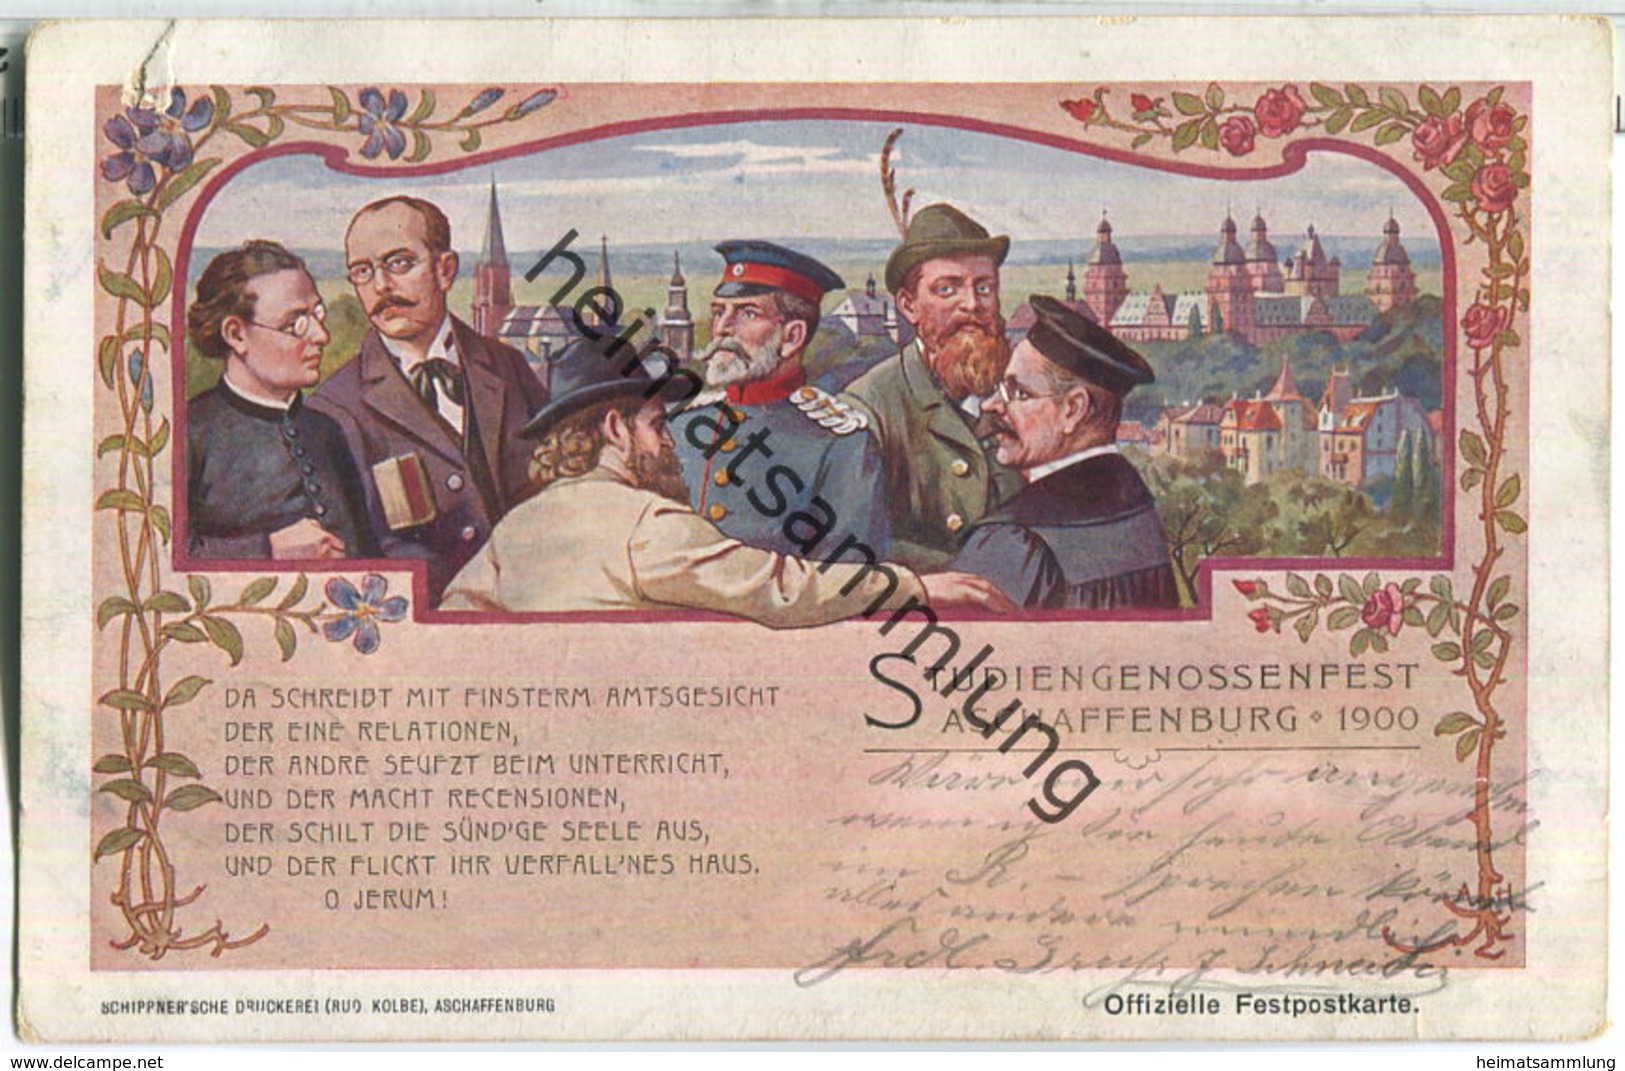 Aschaffenburg - Studiengenossenfest 1900 - Verlag Schippner'sche Druckerei Rud. Kolbe Aschaffenburg - Aschaffenburg